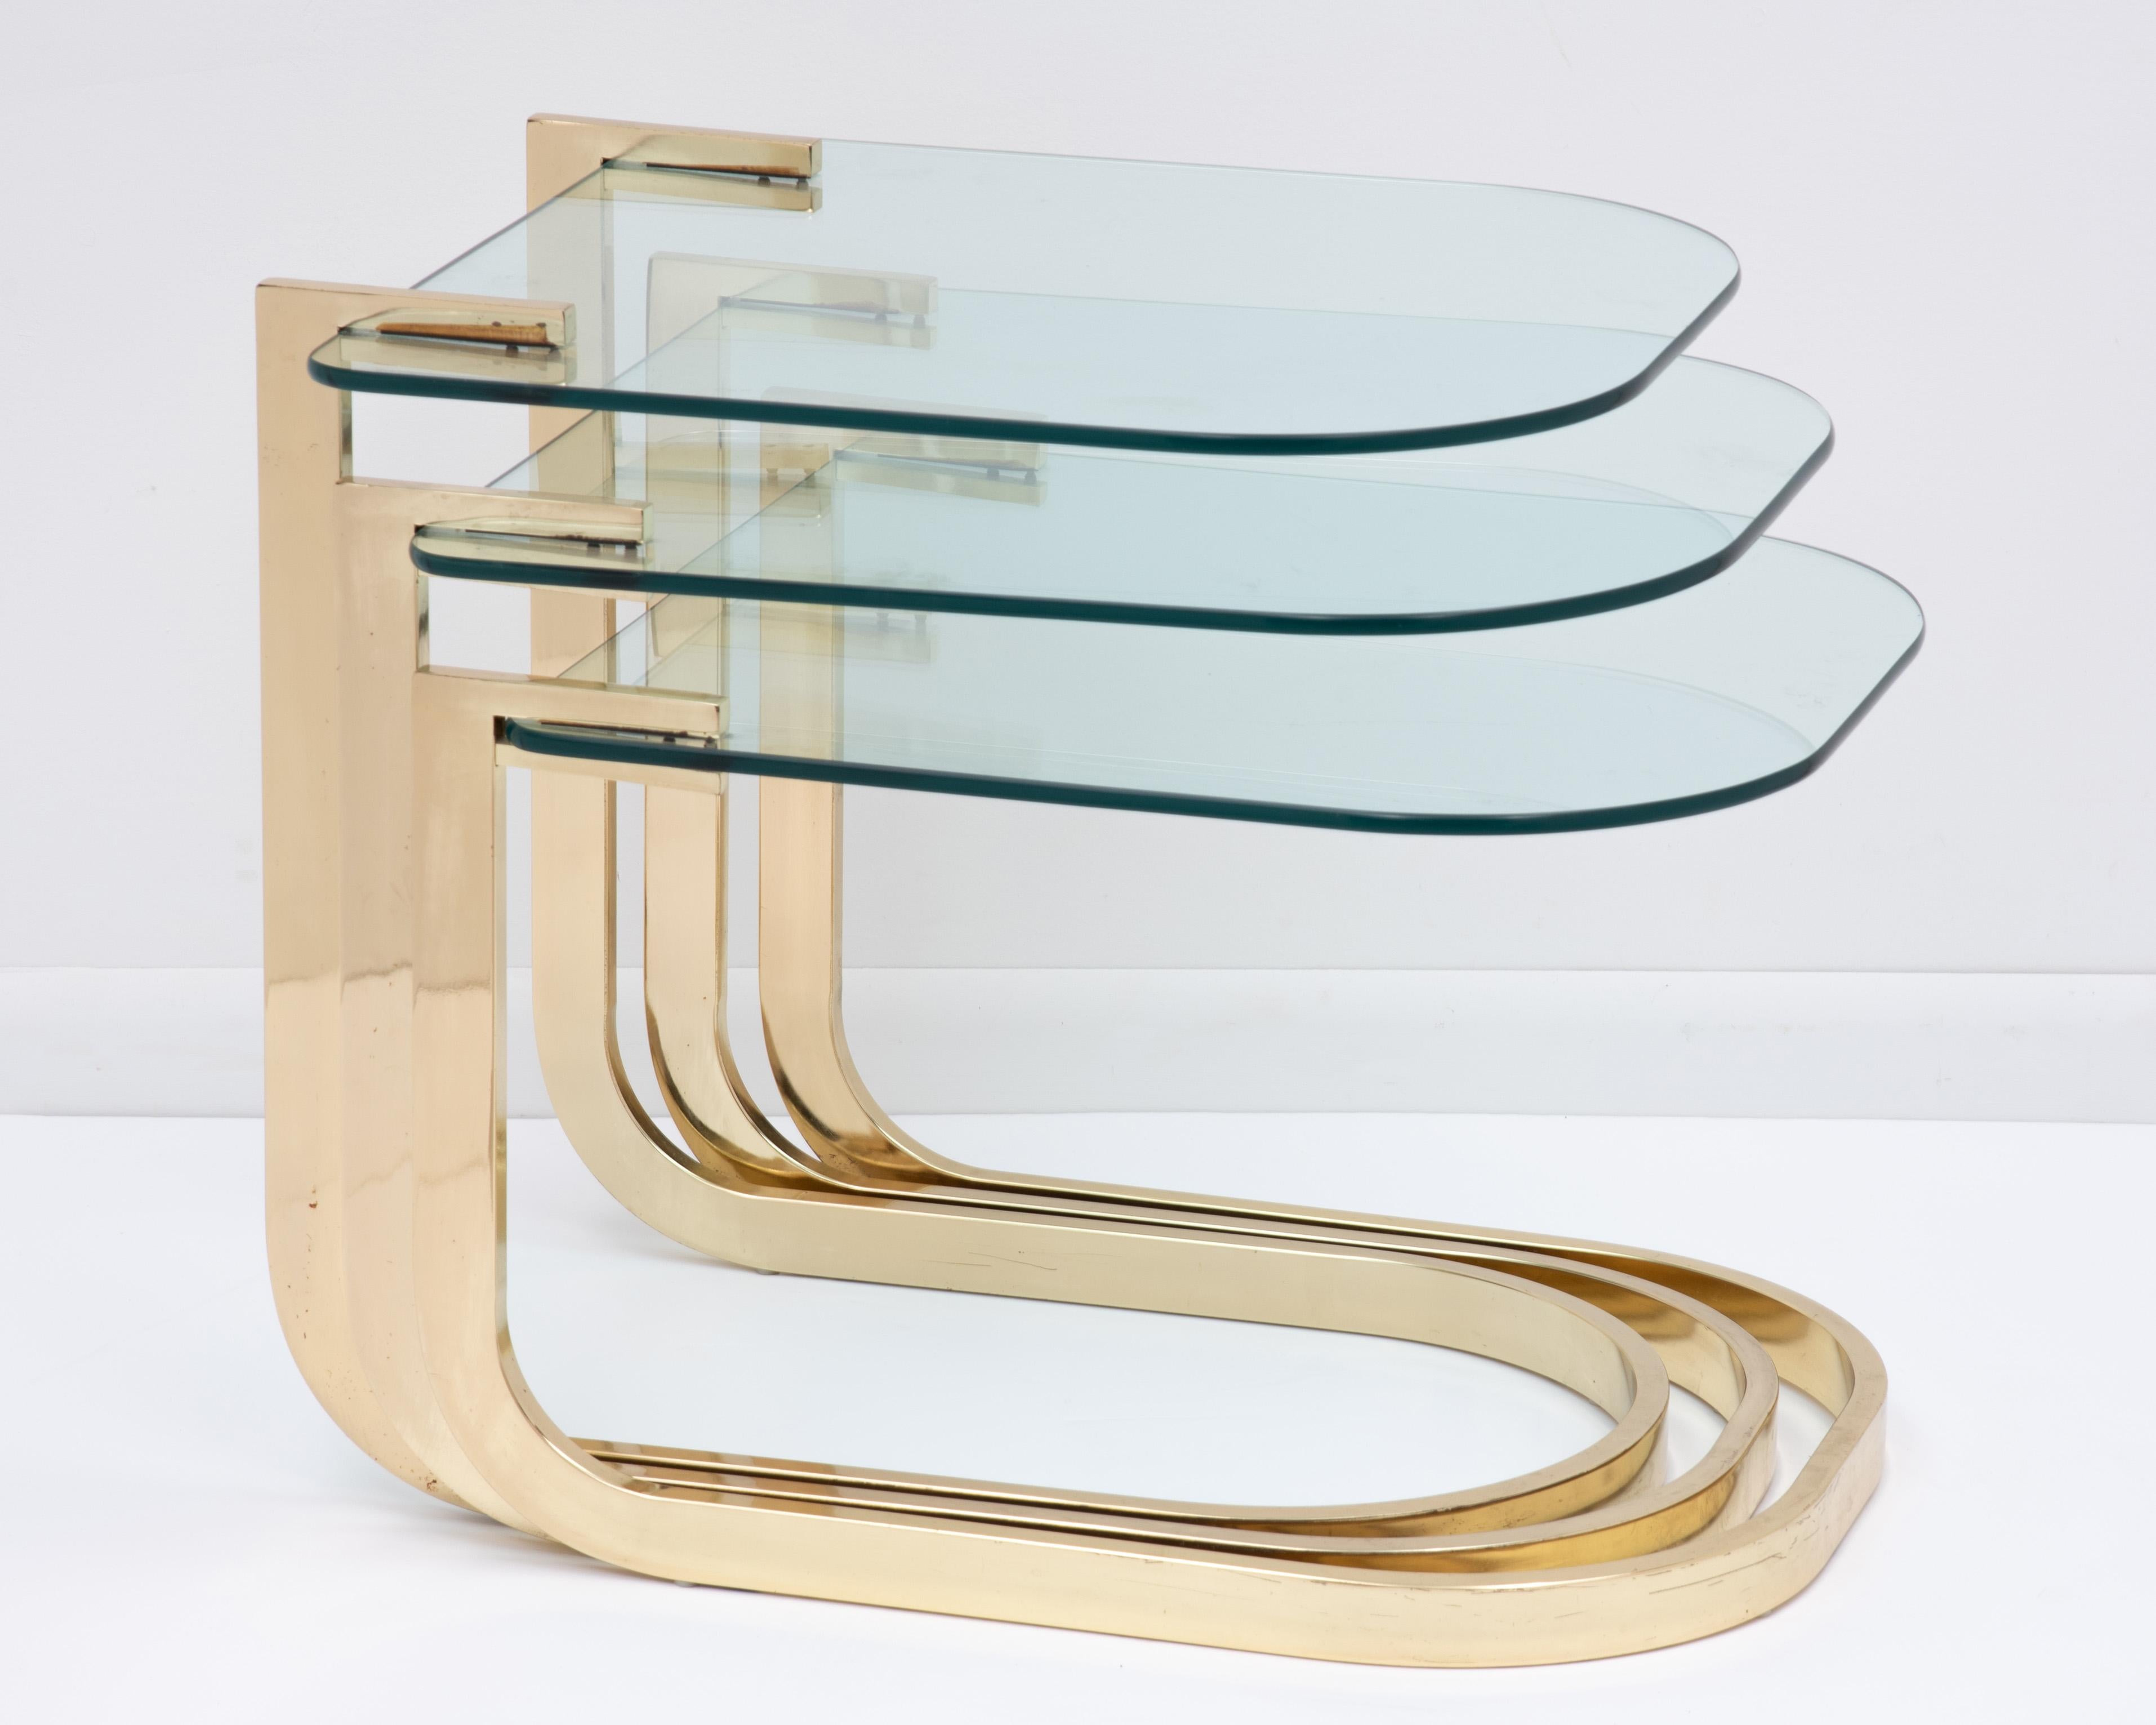 Ein Satz von drei freitragenden Tischen aus Glas und Messing, entworfen von Milo Baughman für das DIA (Design Institute of America). Vollständig mit dem DIA-Folienetikett auf der Unterseite des mittleren Tisches gekennzeichnet, ca. 1984,